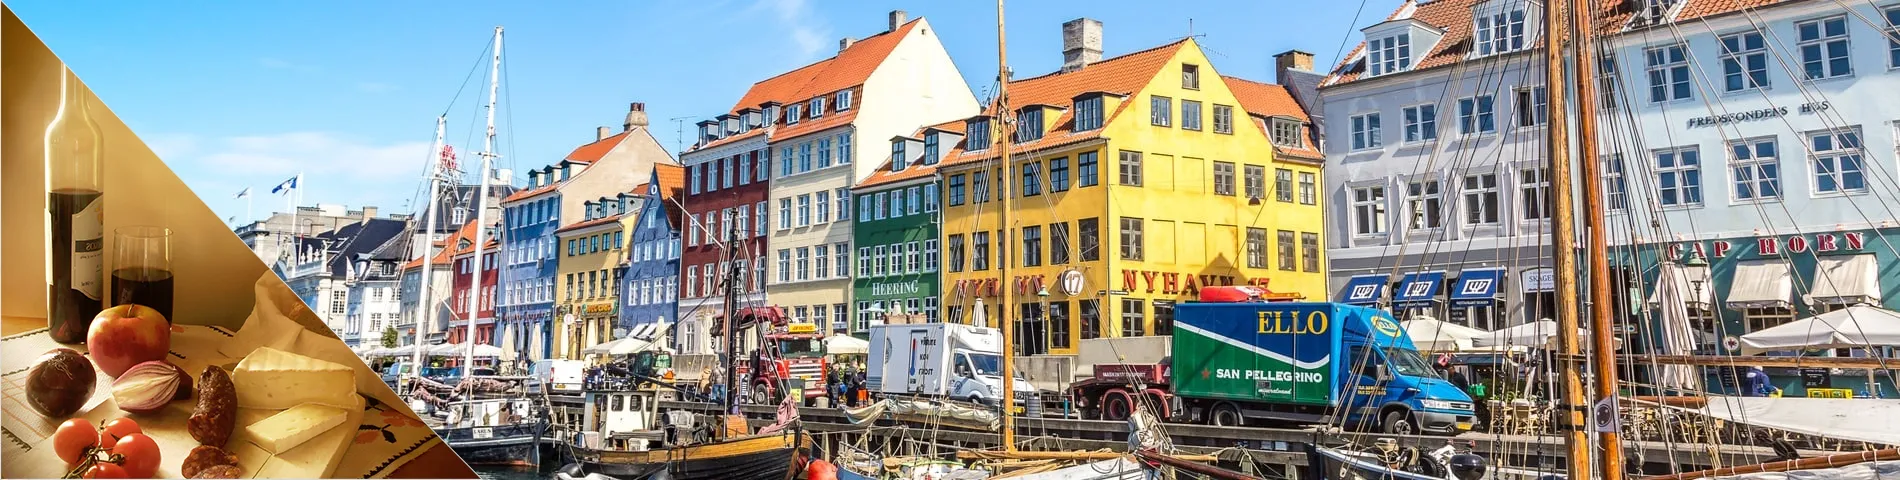 코펜하겐 - 덴마크어 와 문화